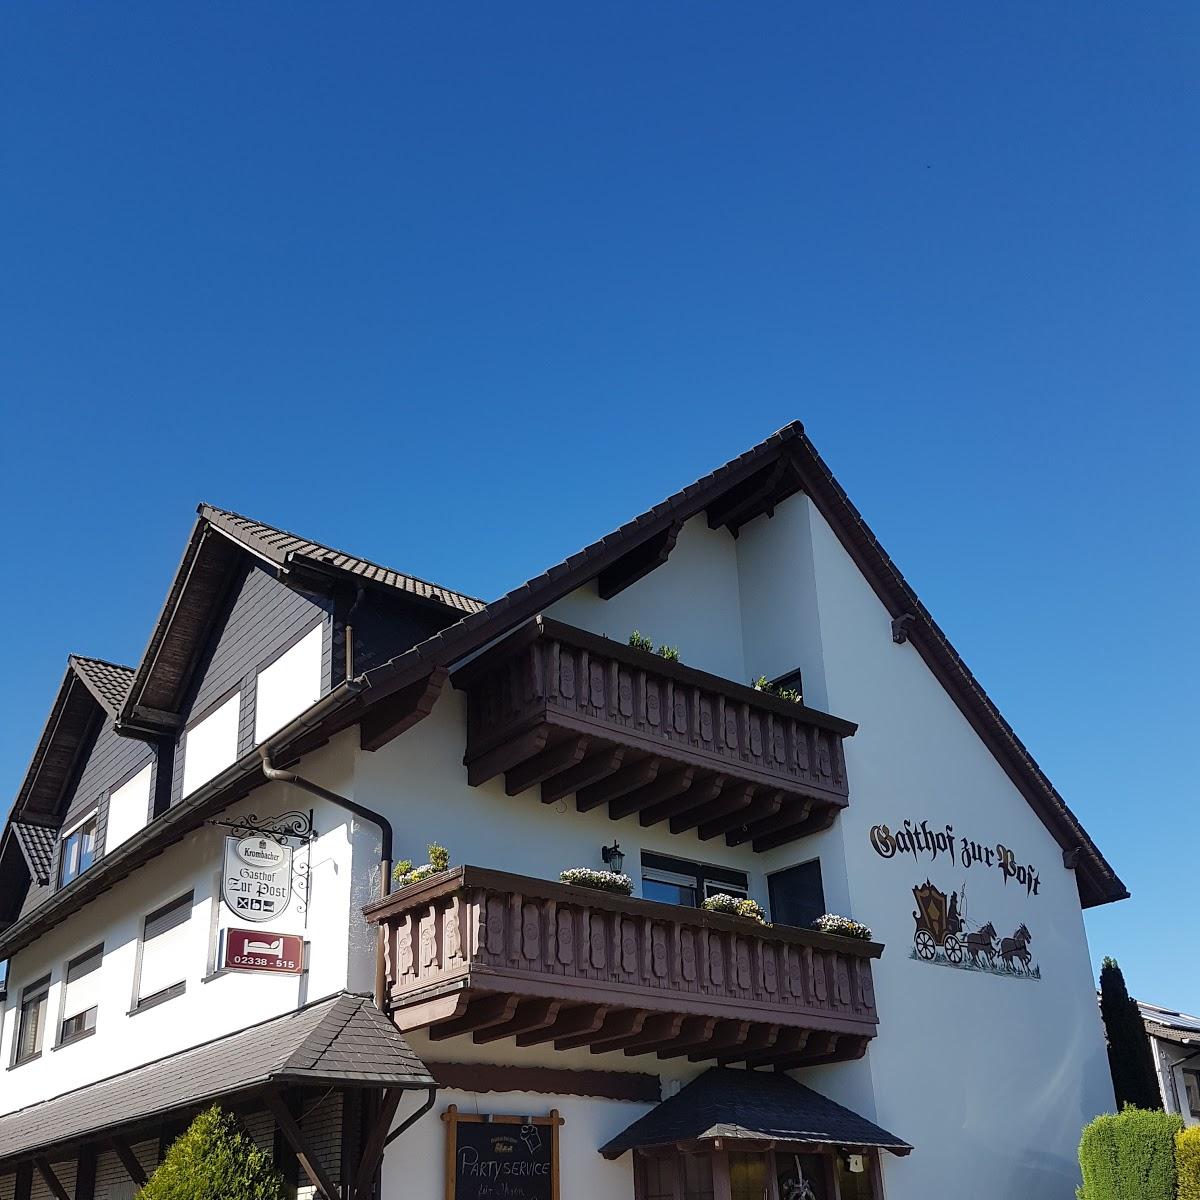 Restaurant "Hotel Zur Post" in  Breckerfeld